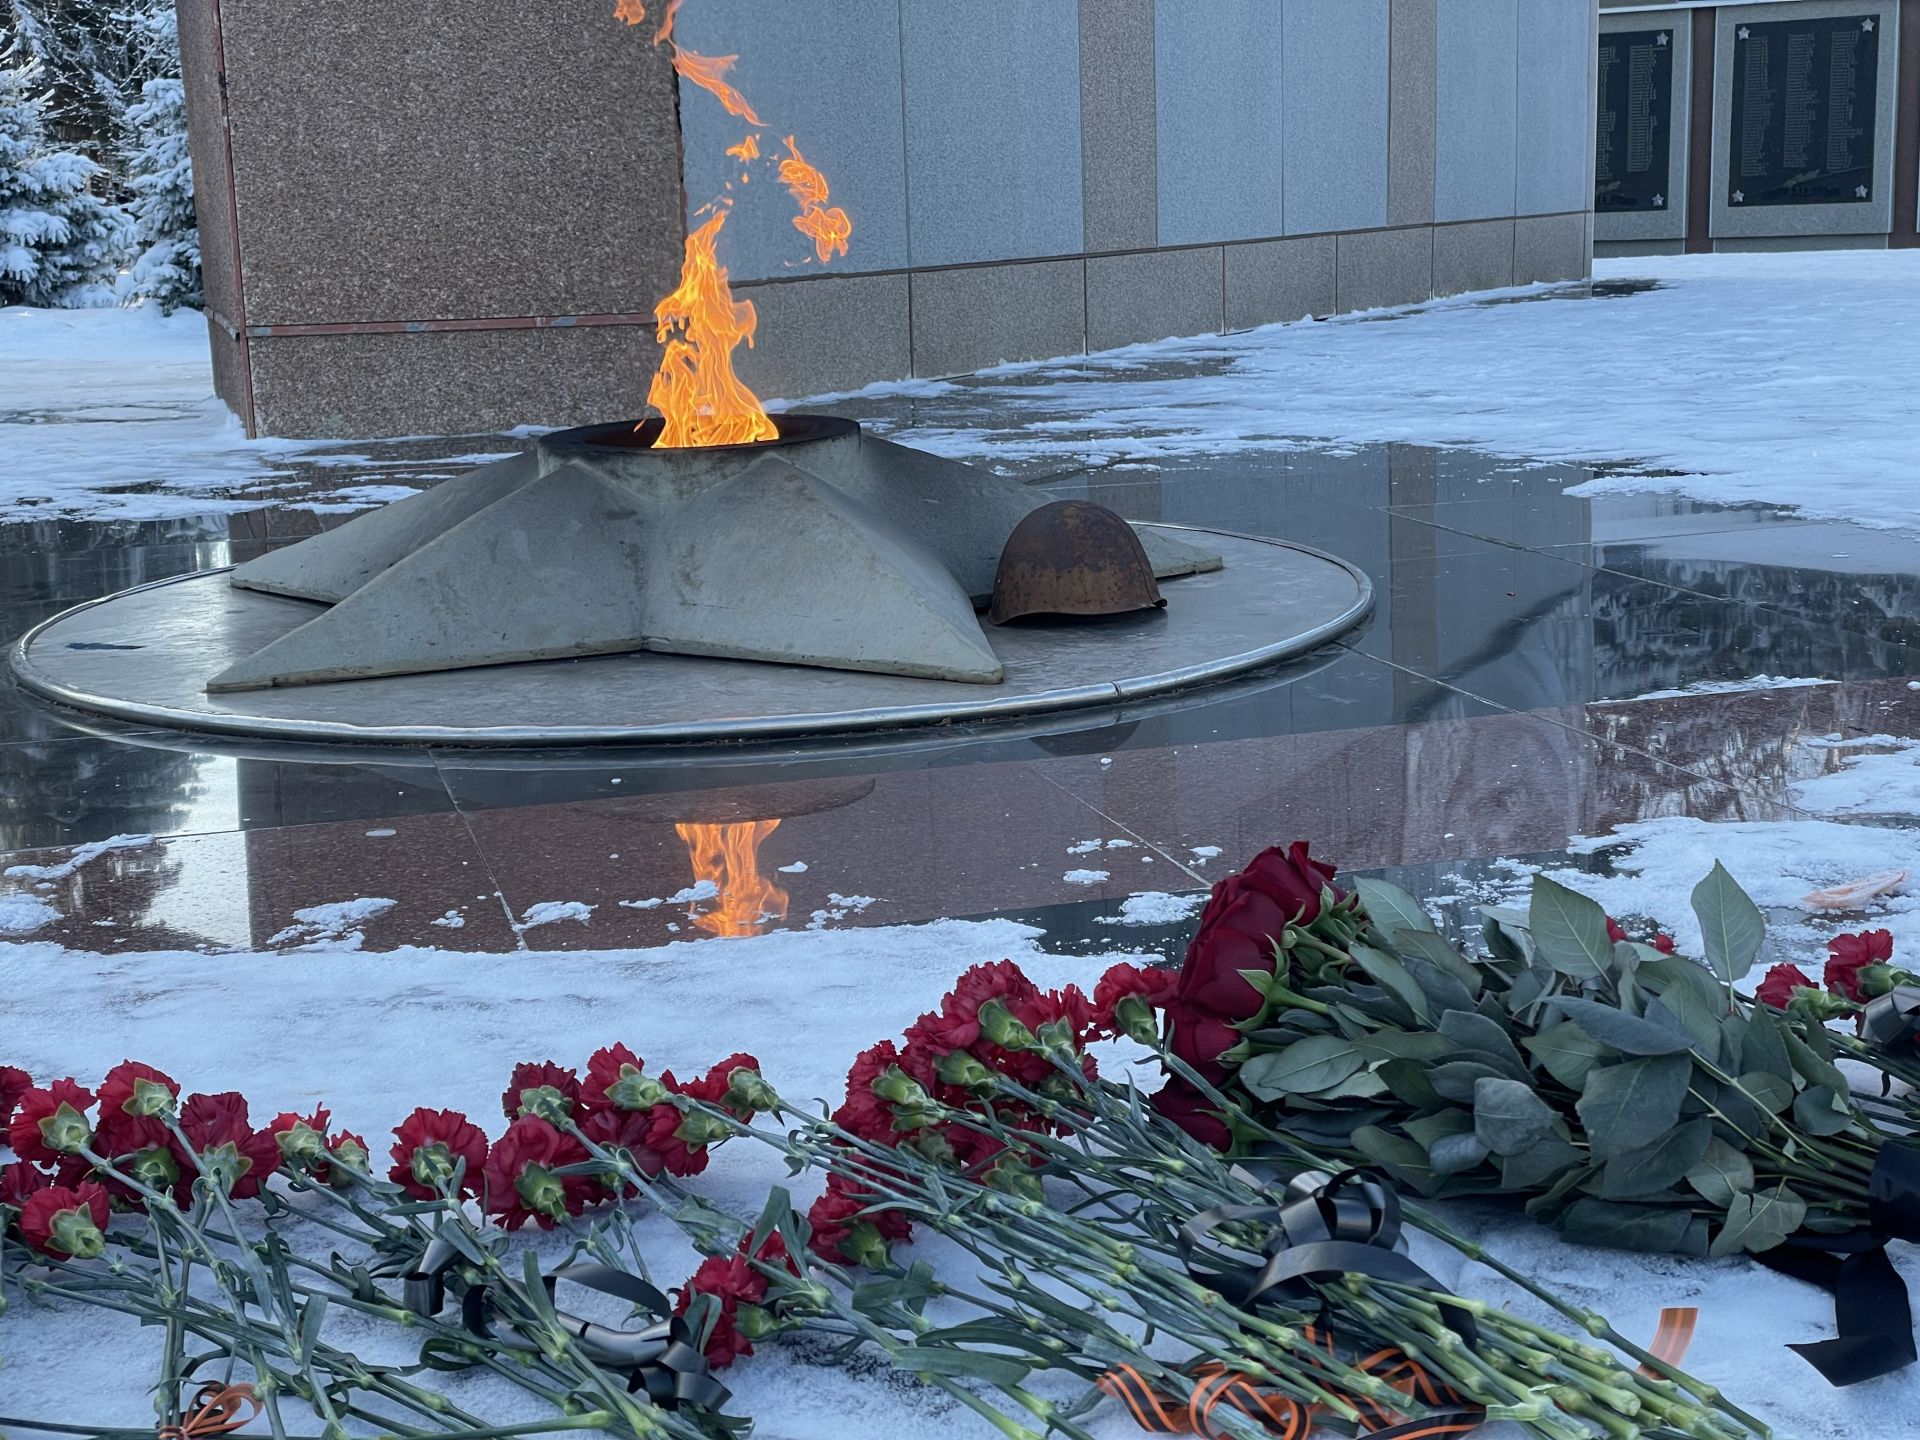 Линар Закиров в День Героев Отечества возложил цветы к монументам города